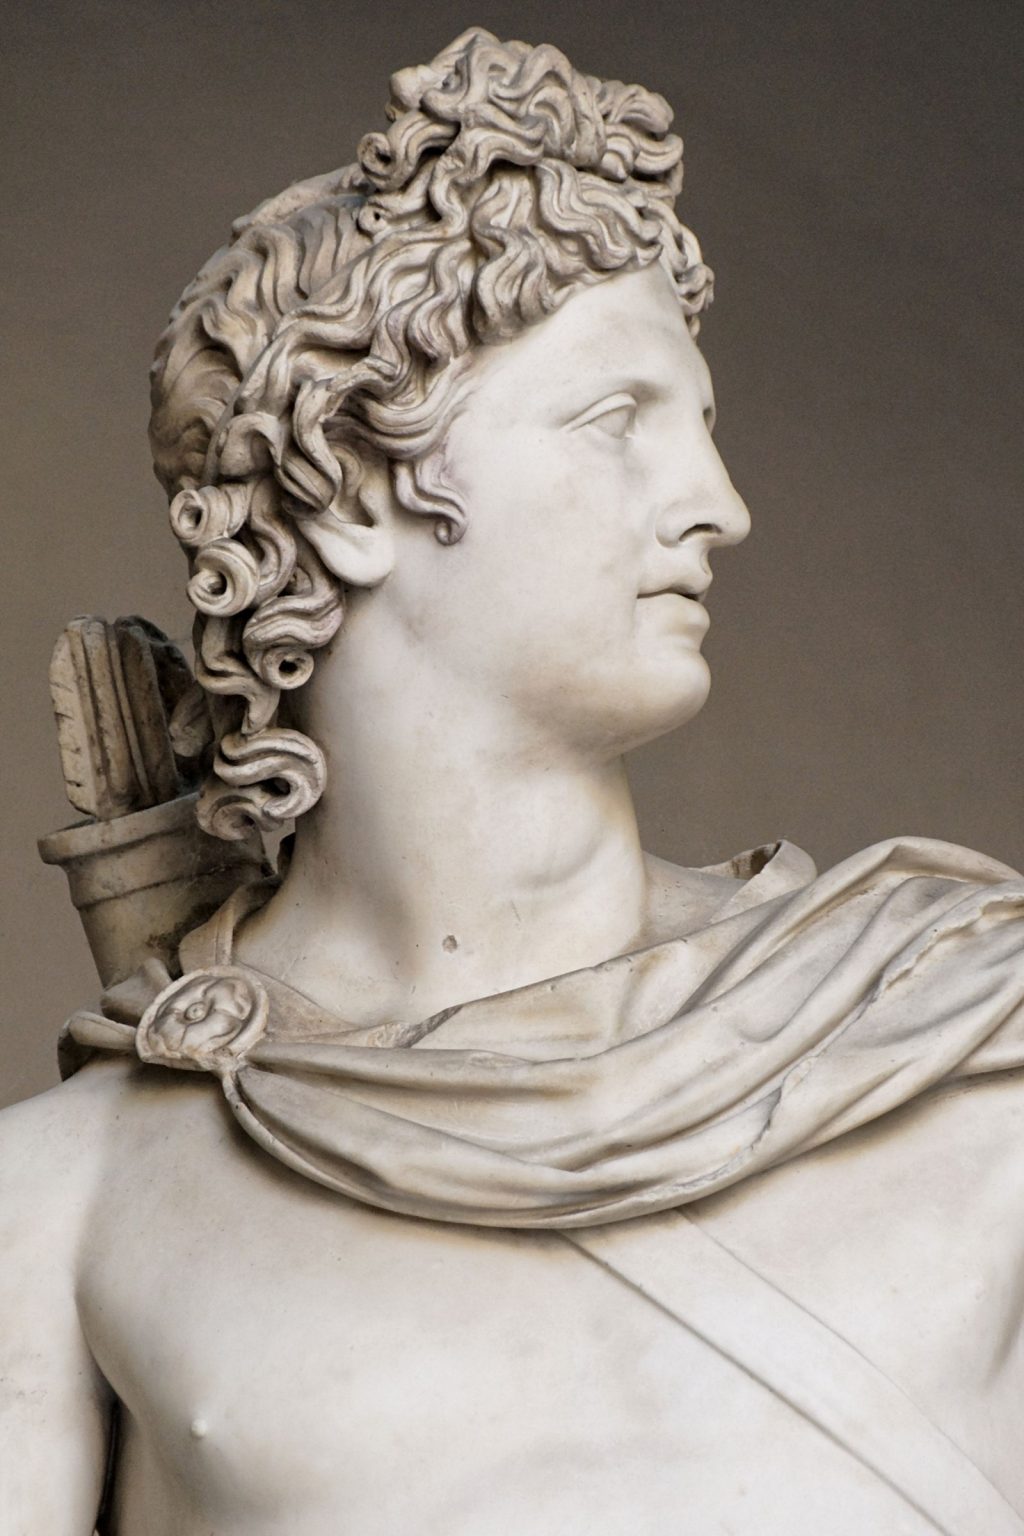 tóc mullet trên Tượng thần Mặt trời Apollo Belvedere vào khoảng năm 120–140 sau Công nguyên